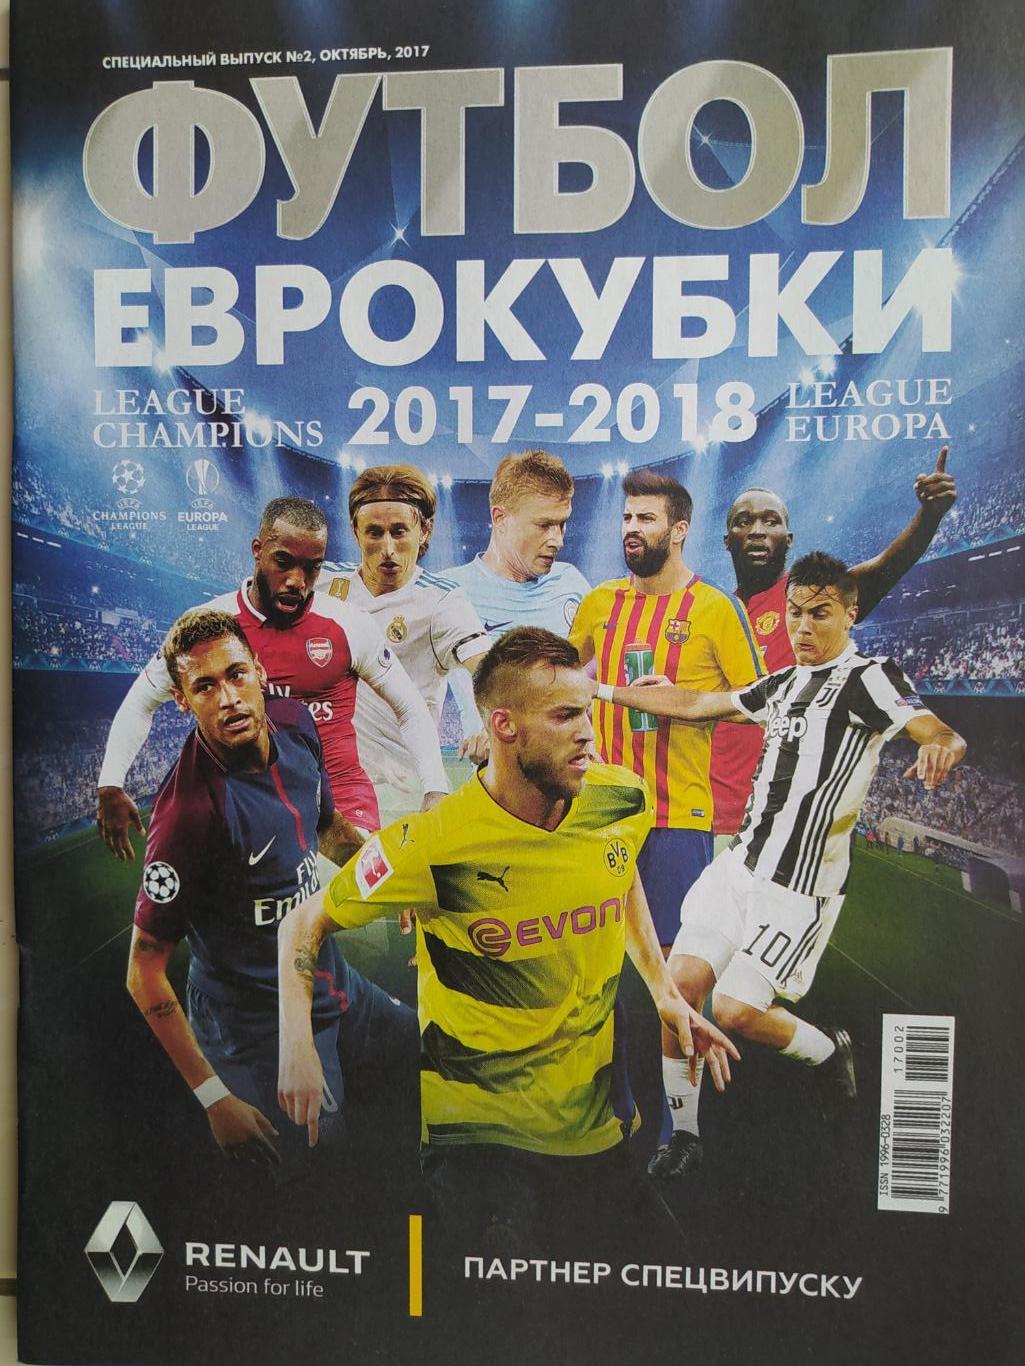 Еженедельник Футбол Украина спецвыпуск № 2 за 2017 год Еврокубки